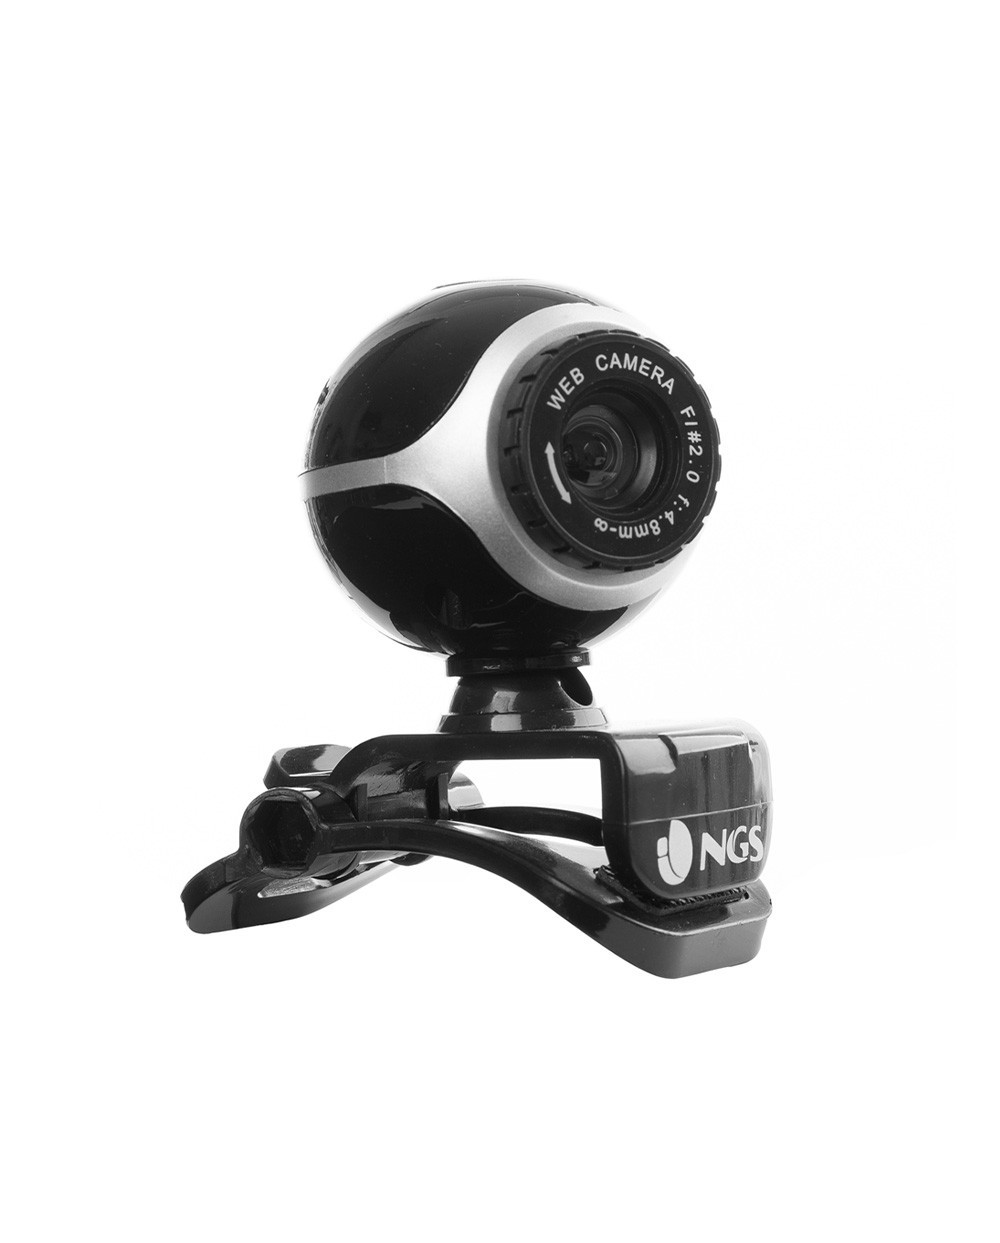 Camara webcam ngs xpresscam300 con microfono 8 mpx usb 20